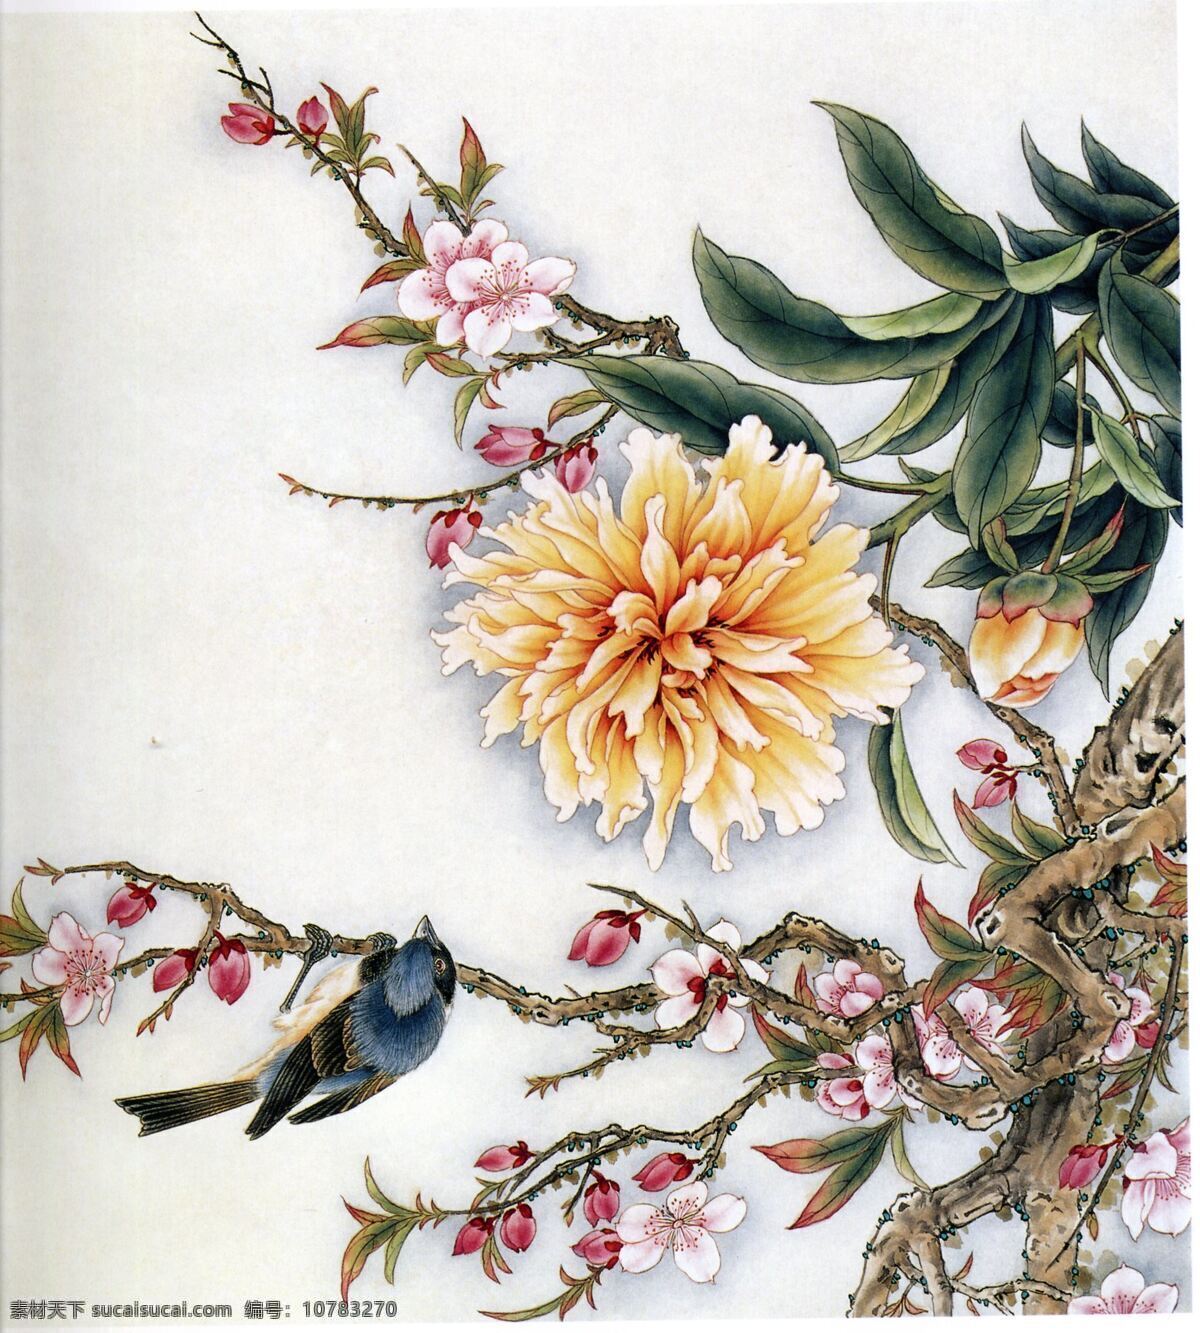 花鸟图 花 鸟 中国画 艺术 工笔画 树叶 绘画书法 文化艺术